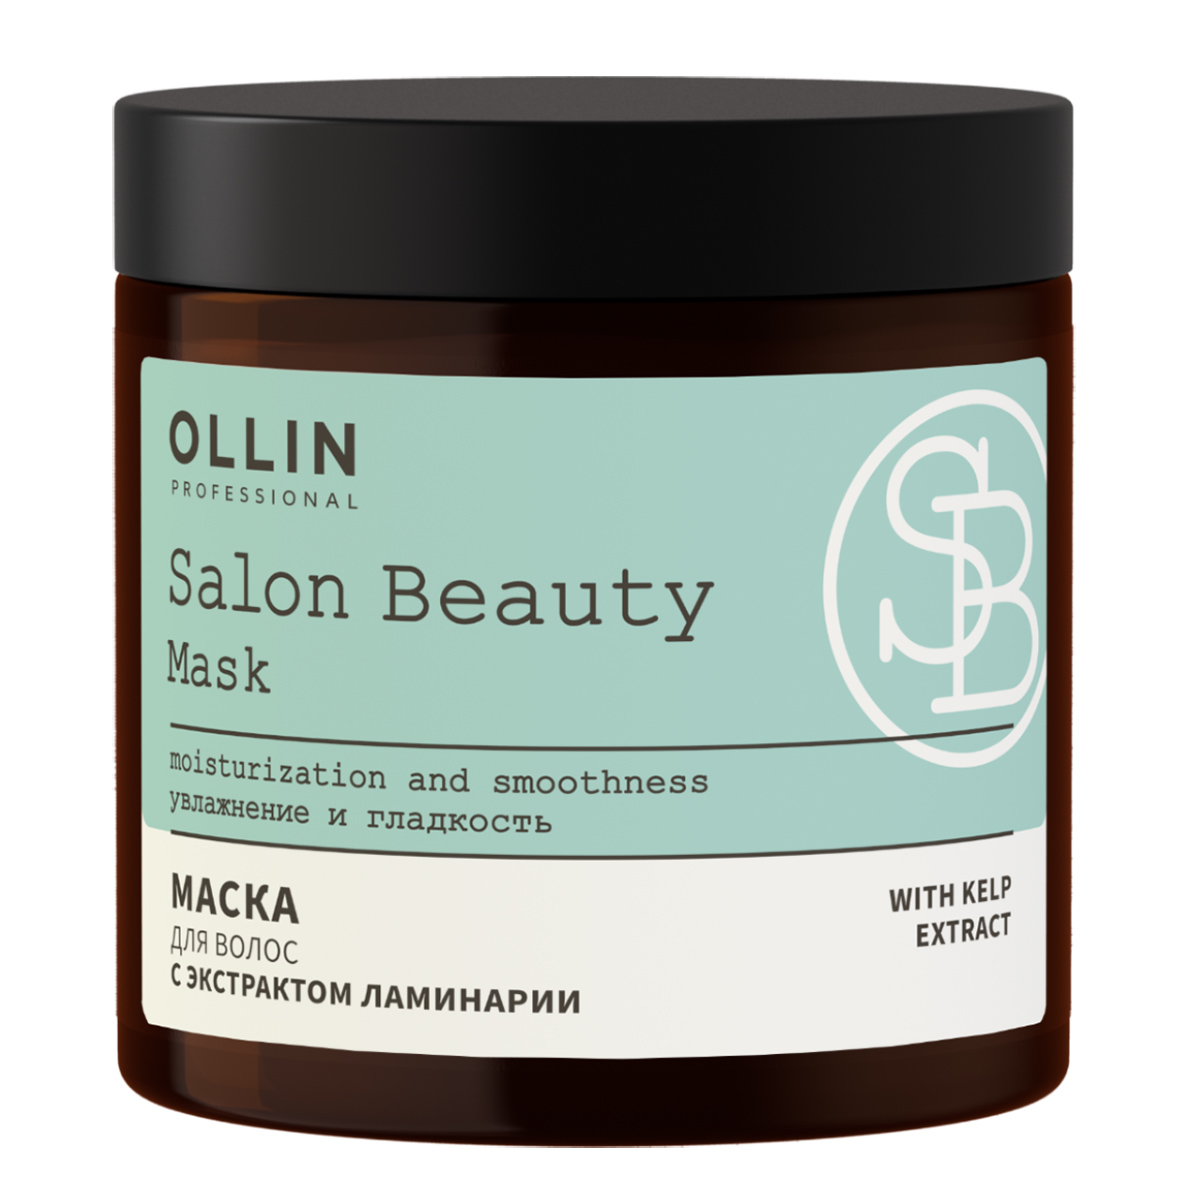 SALON BEAUTY Маска для волос с экстрактом ламинарии, 500мл, OLLIN